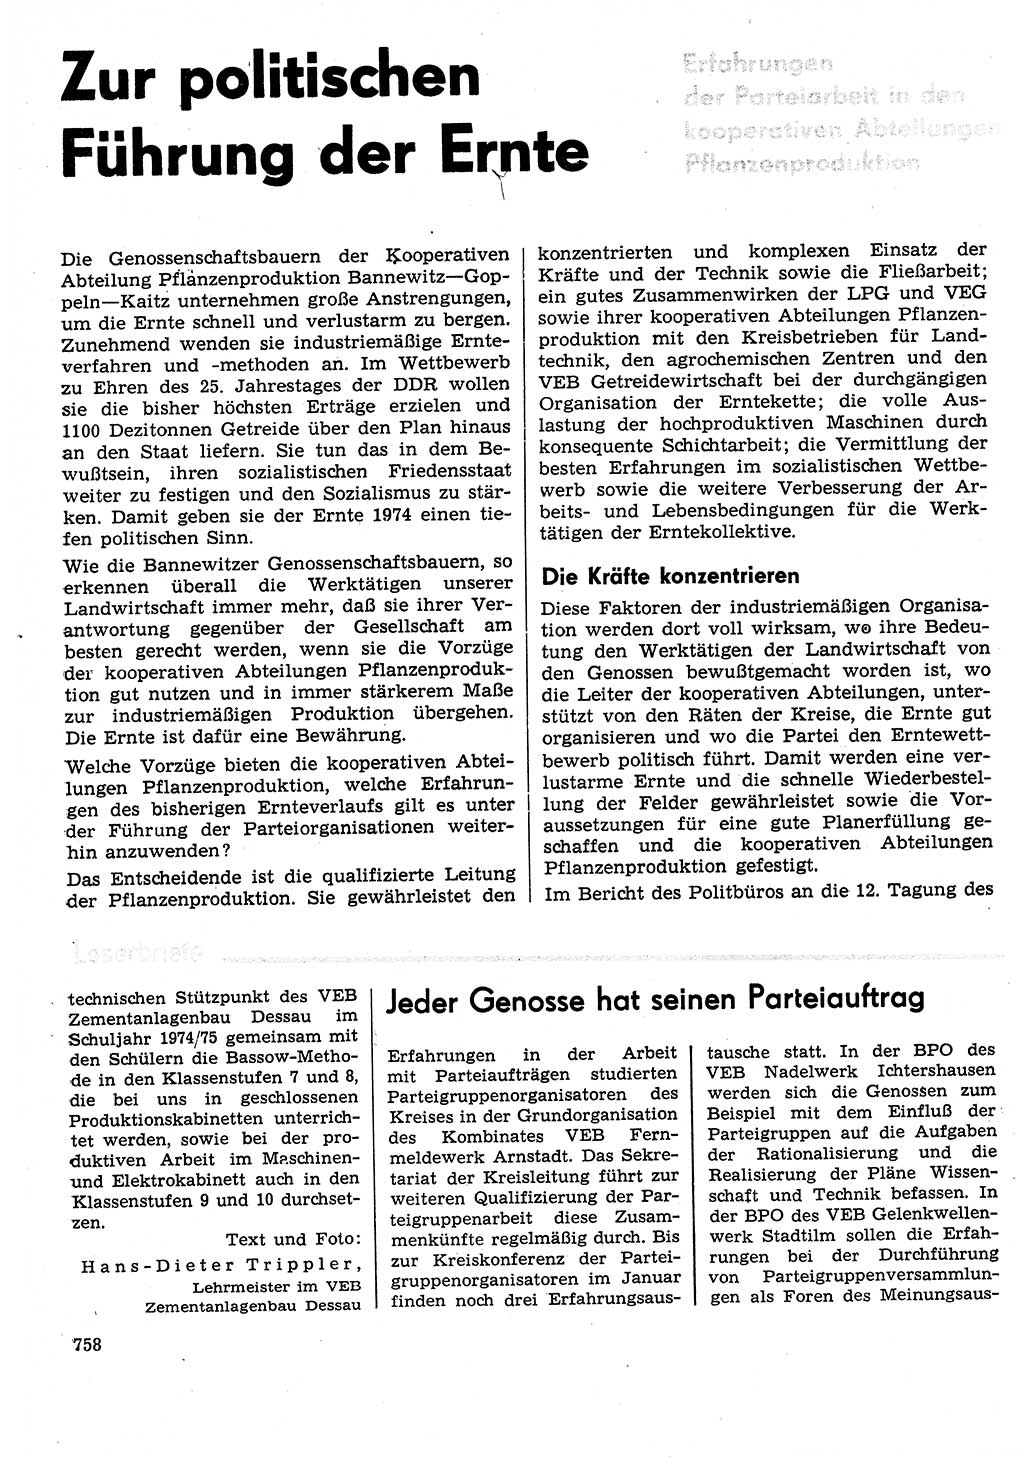 Neuer Weg (NW), Organ des Zentralkomitees (ZK) der SED (Sozialistische Einheitspartei Deutschlands) für Fragen des Parteilebens, 29. Jahrgang [Deutsche Demokratische Republik (DDR)] 1974, Seite 758 (NW ZK SED DDR 1974, S. 758)